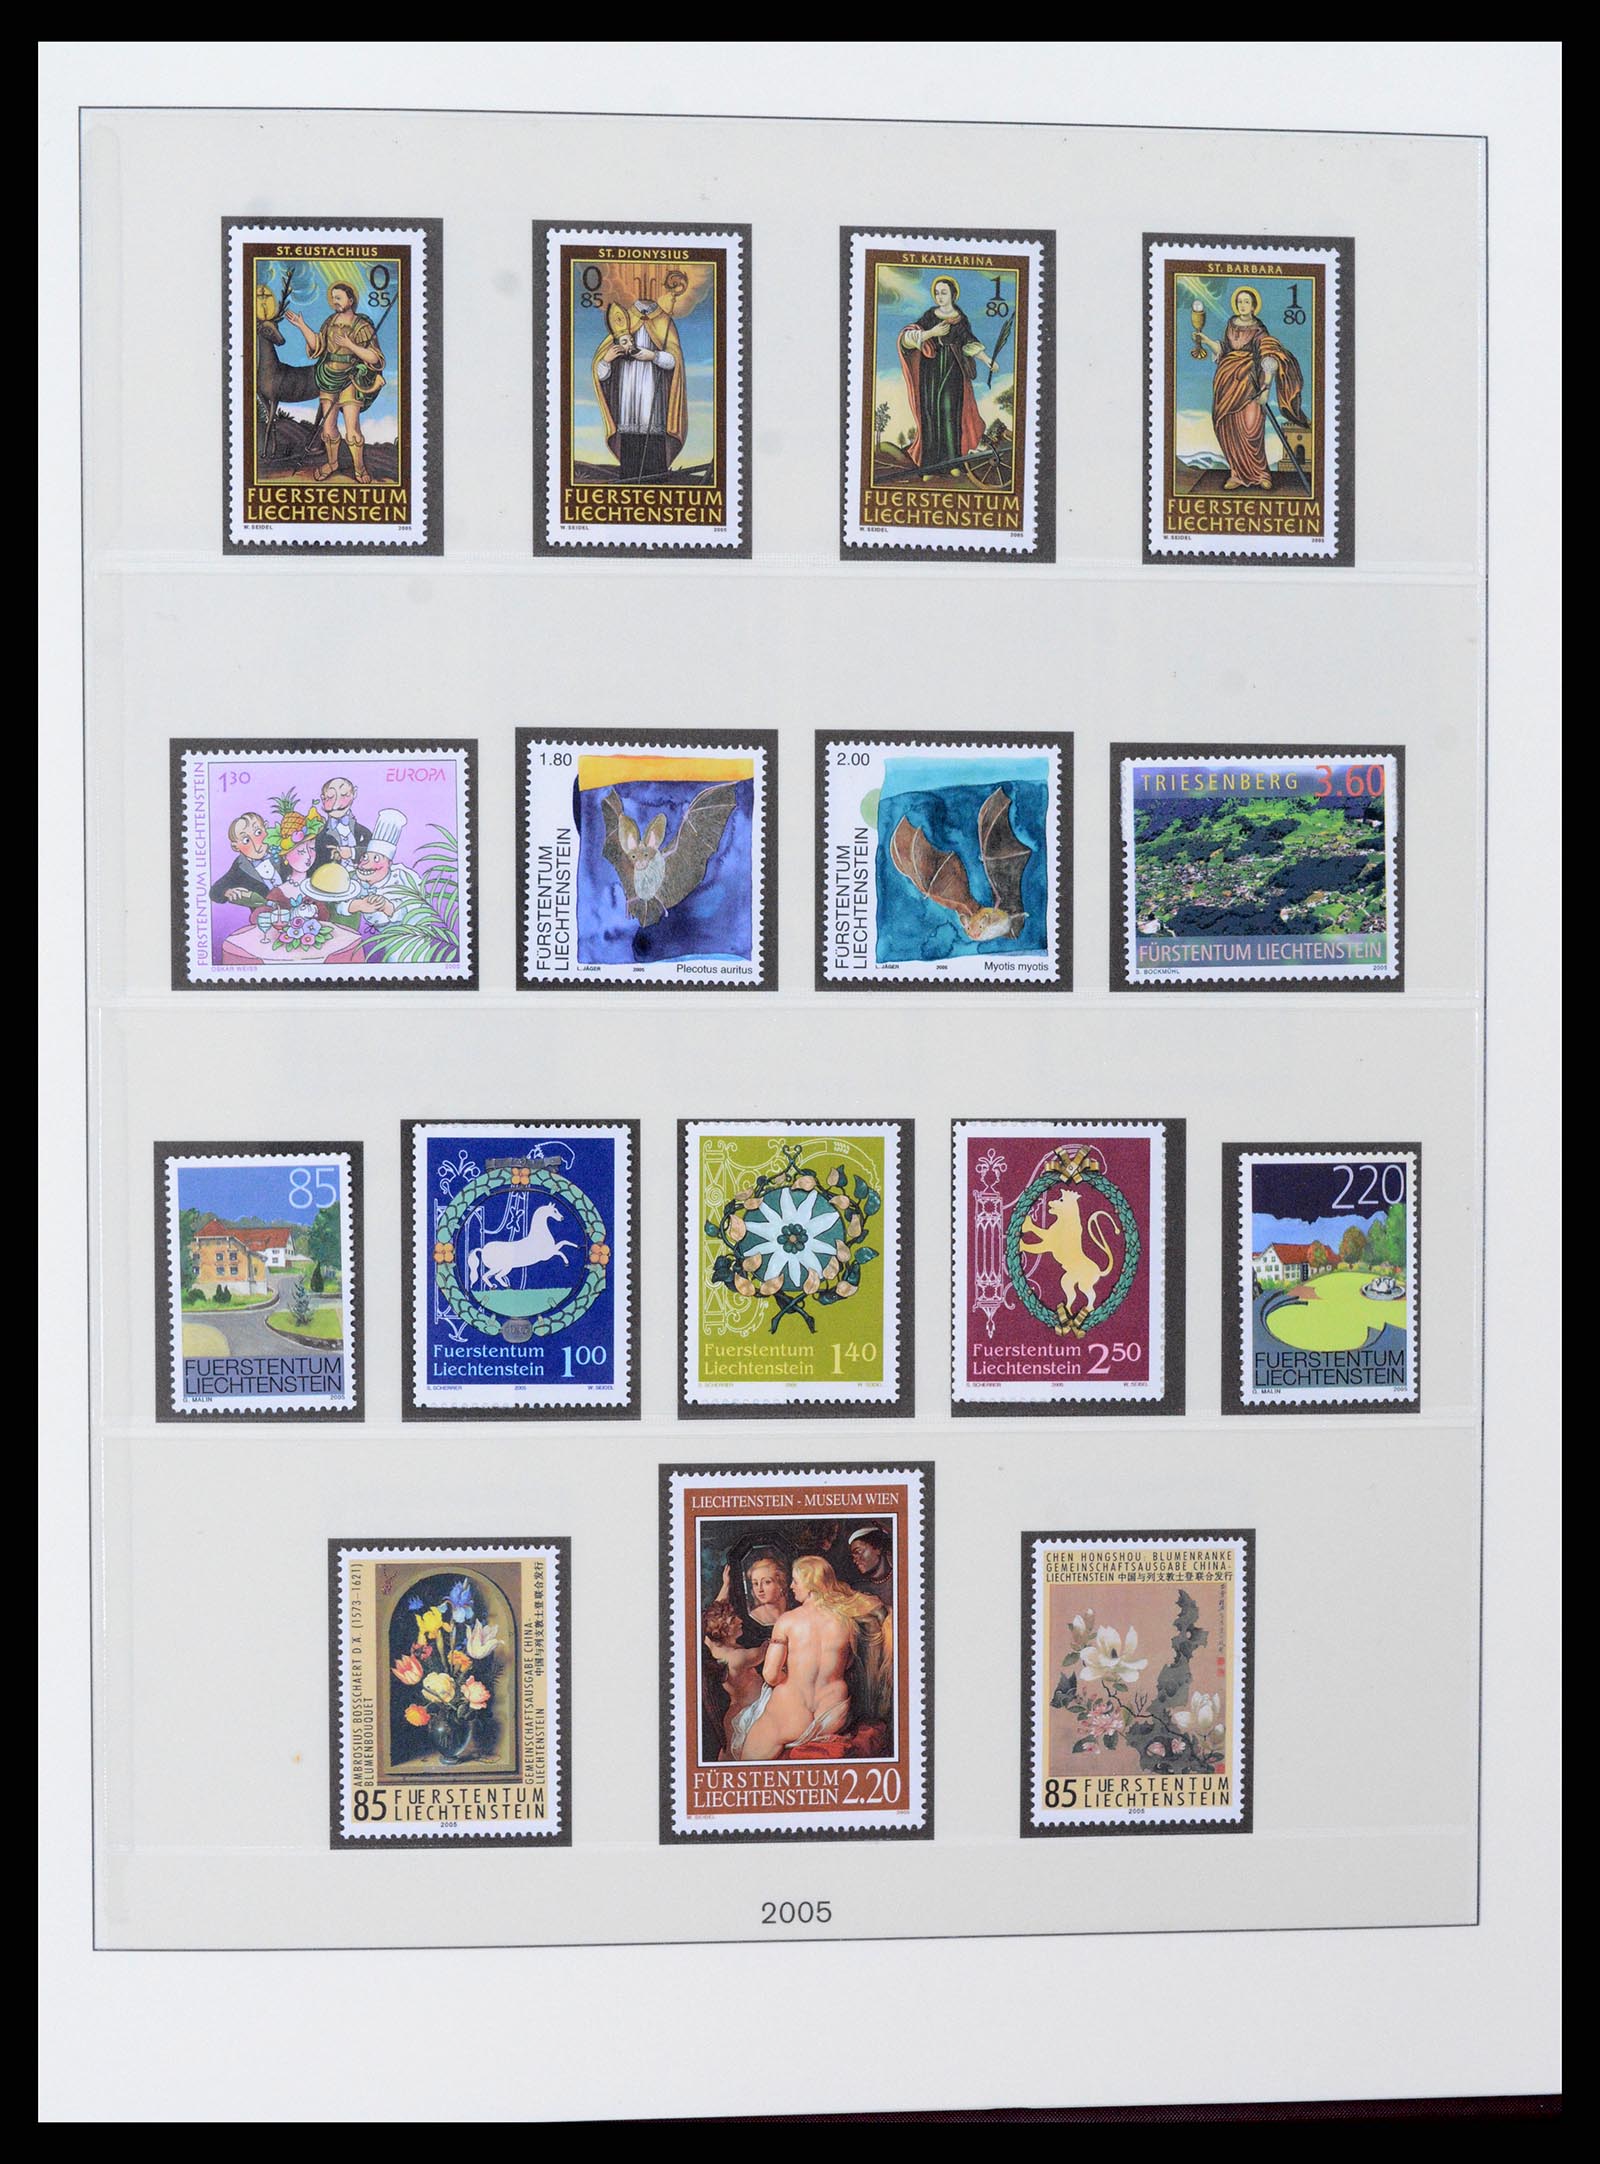 37295 138 - Stamp collection 37295 Liechtenstein 1912-2009.